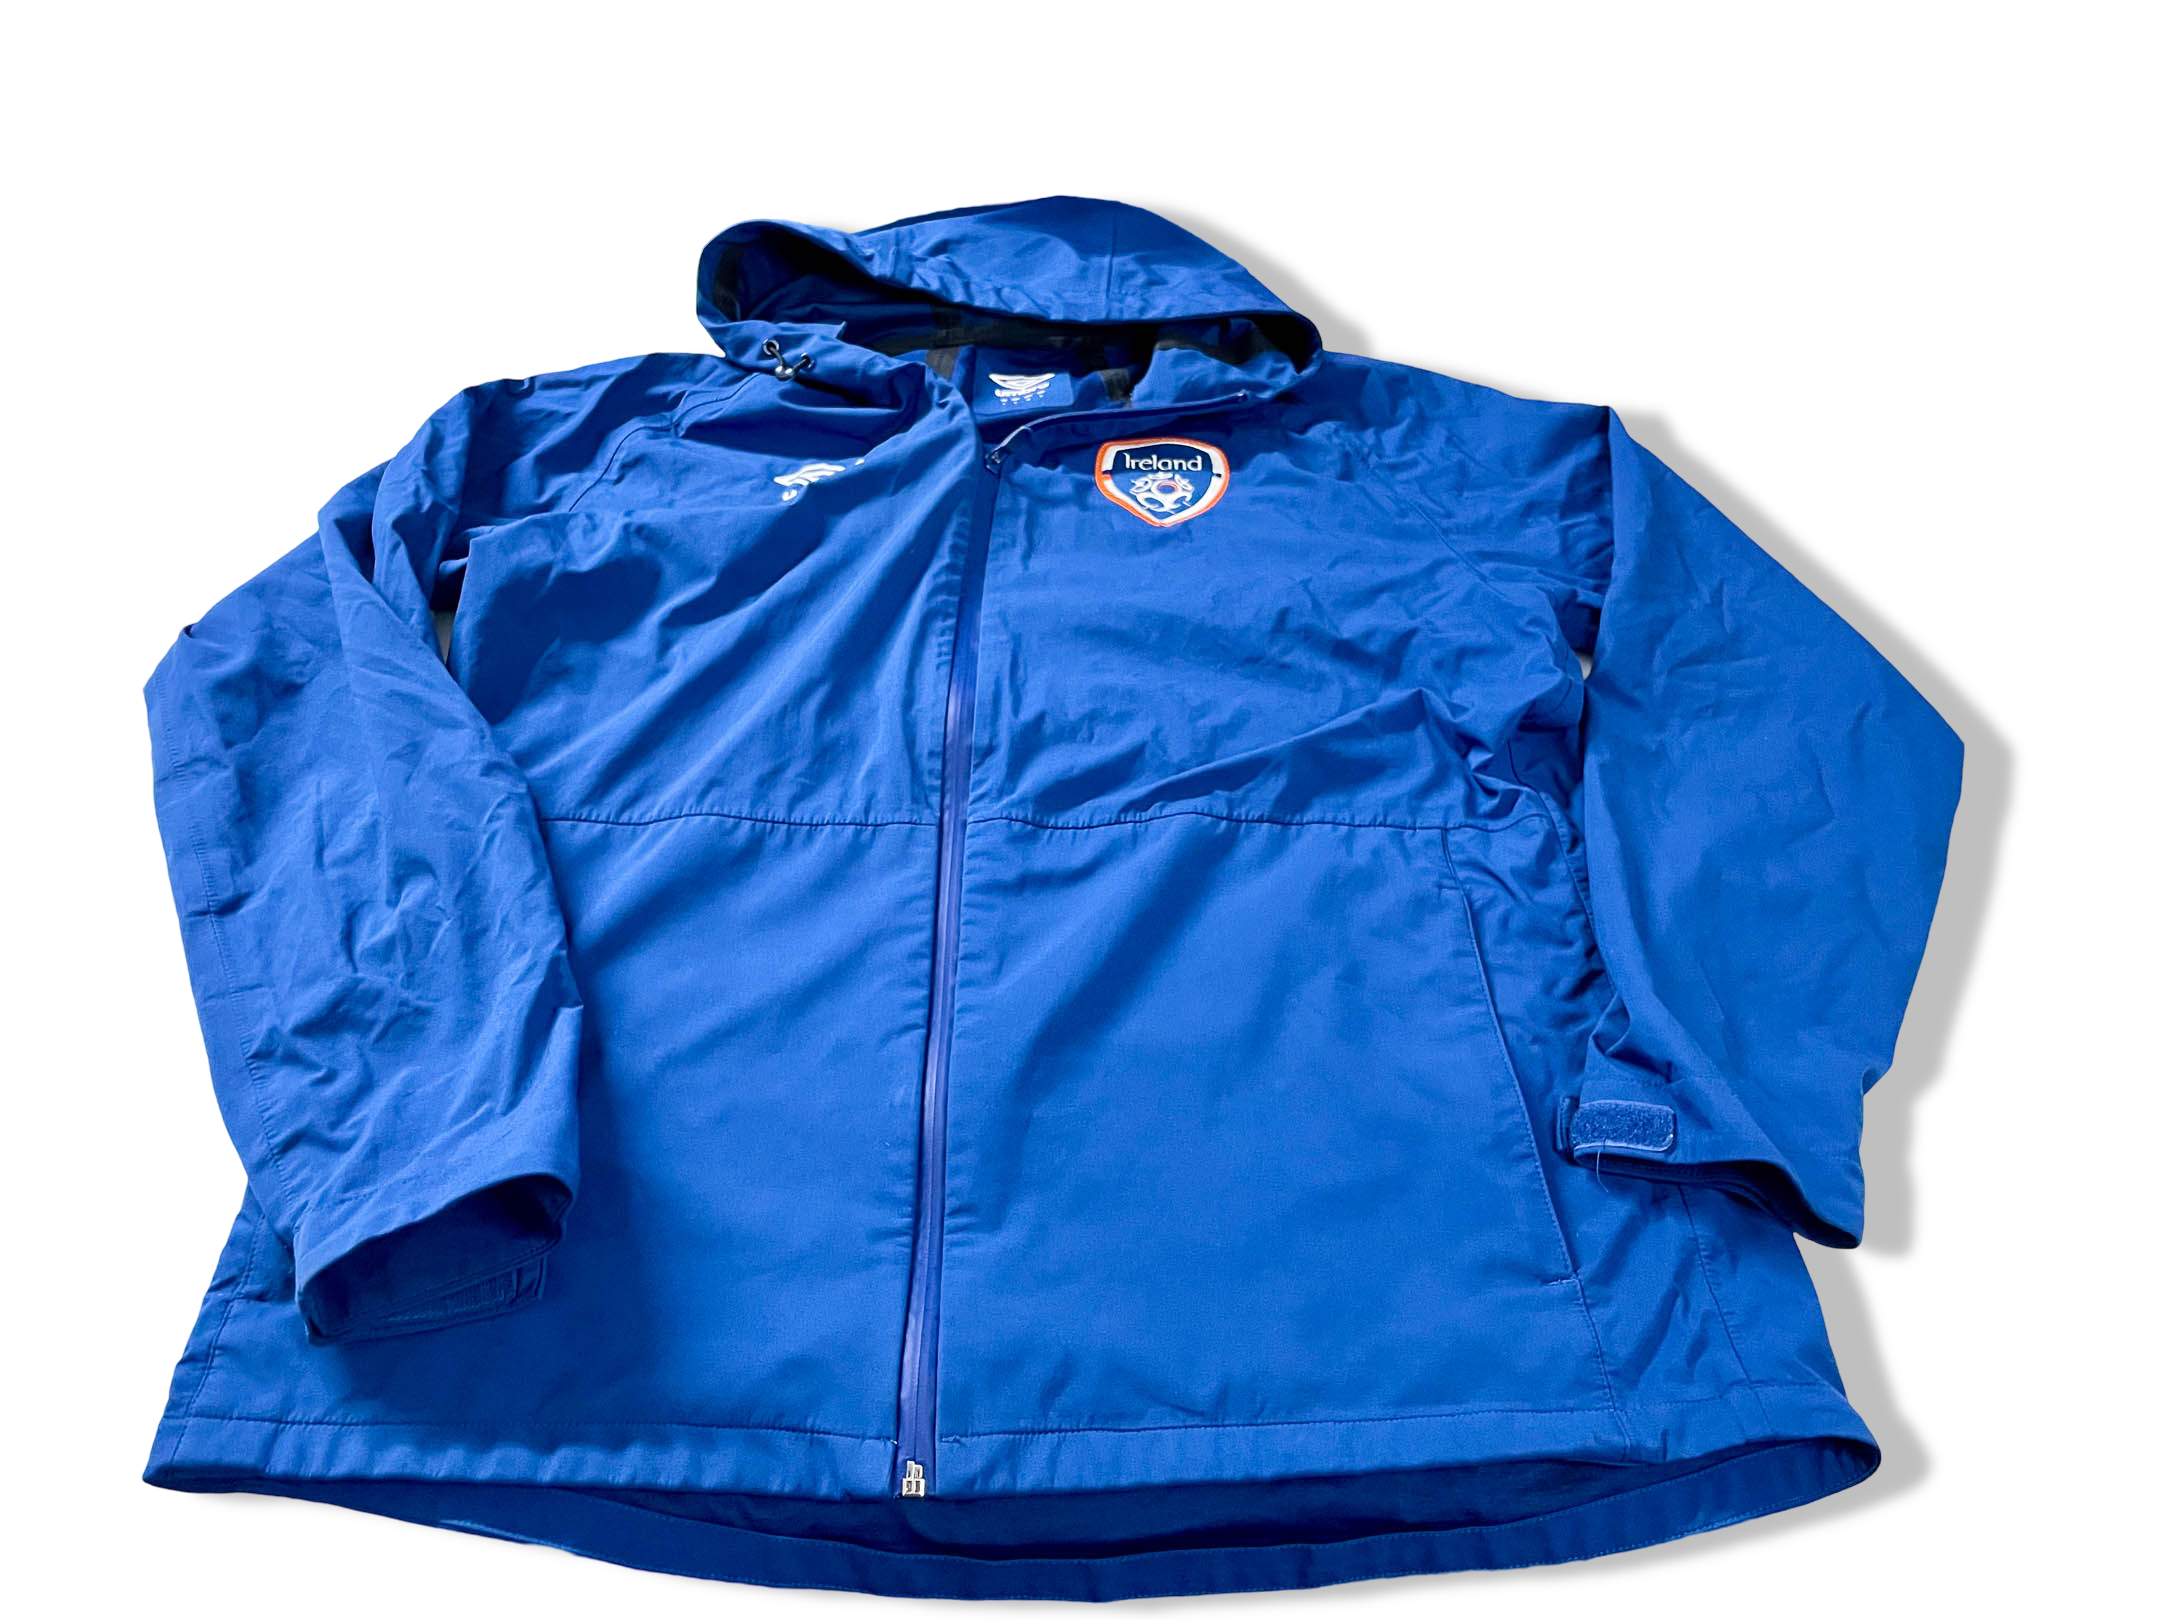 Vintage Men's Umbro Ireland blue full zip hoodie jacket in XL|L31 W24|SKU 4101